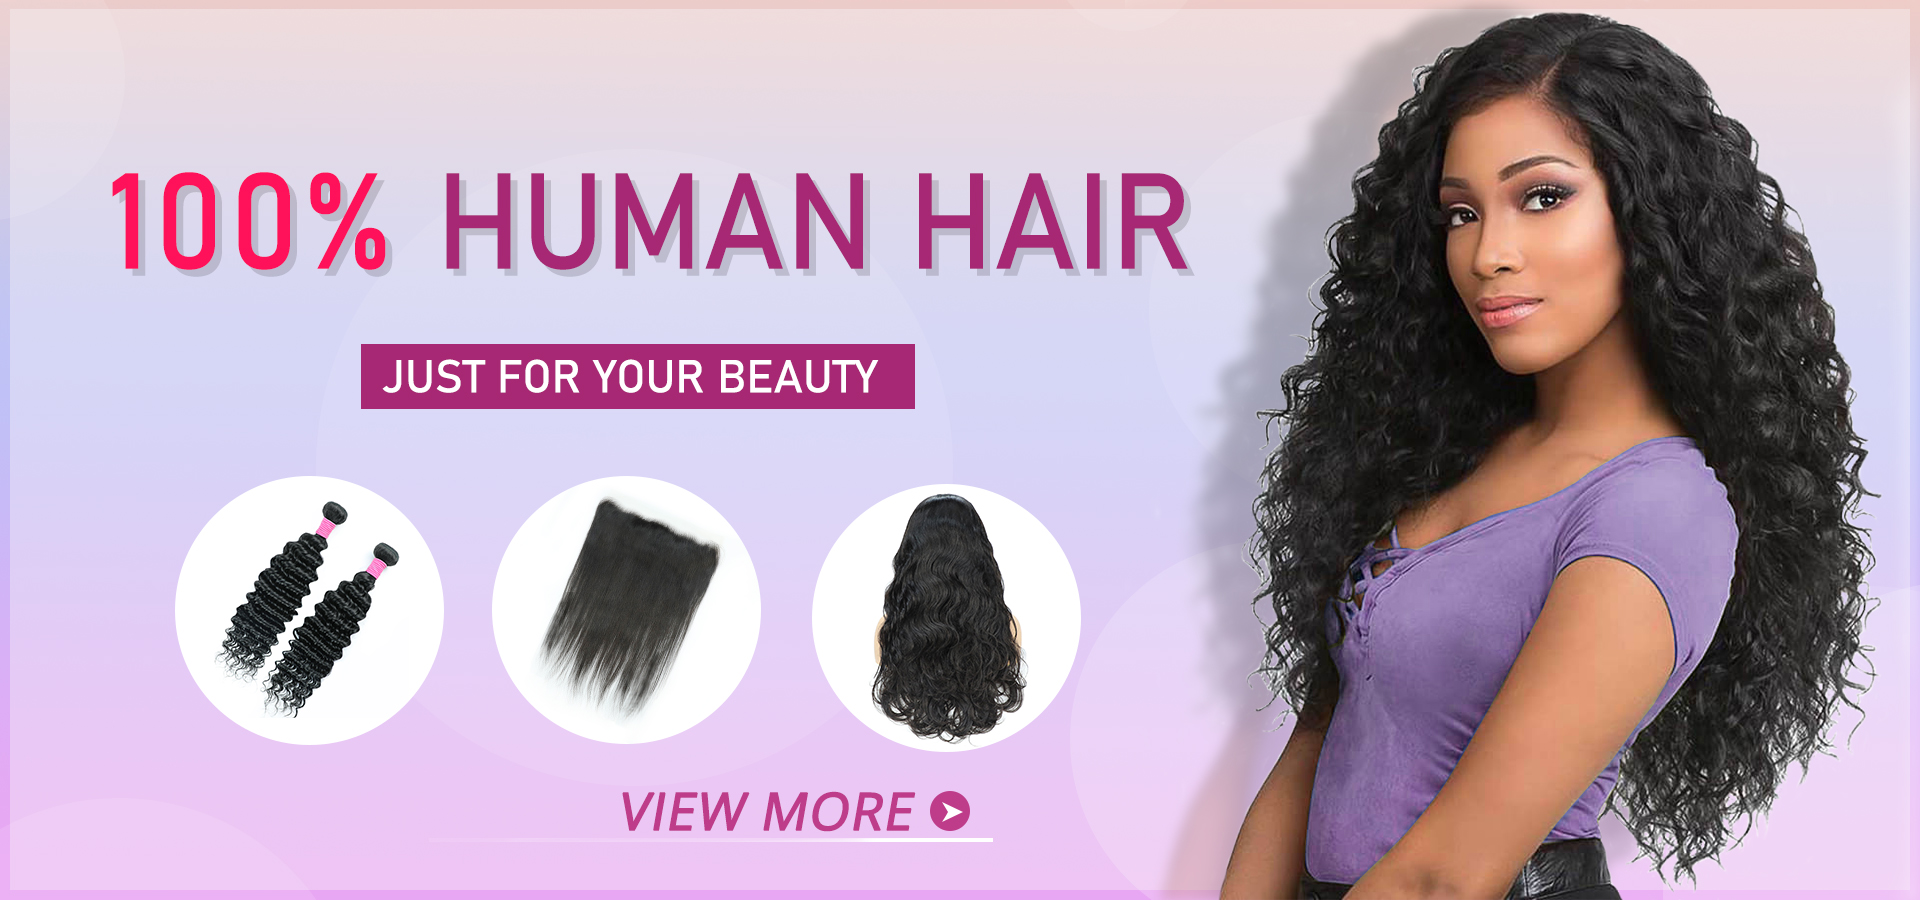 100% human hair